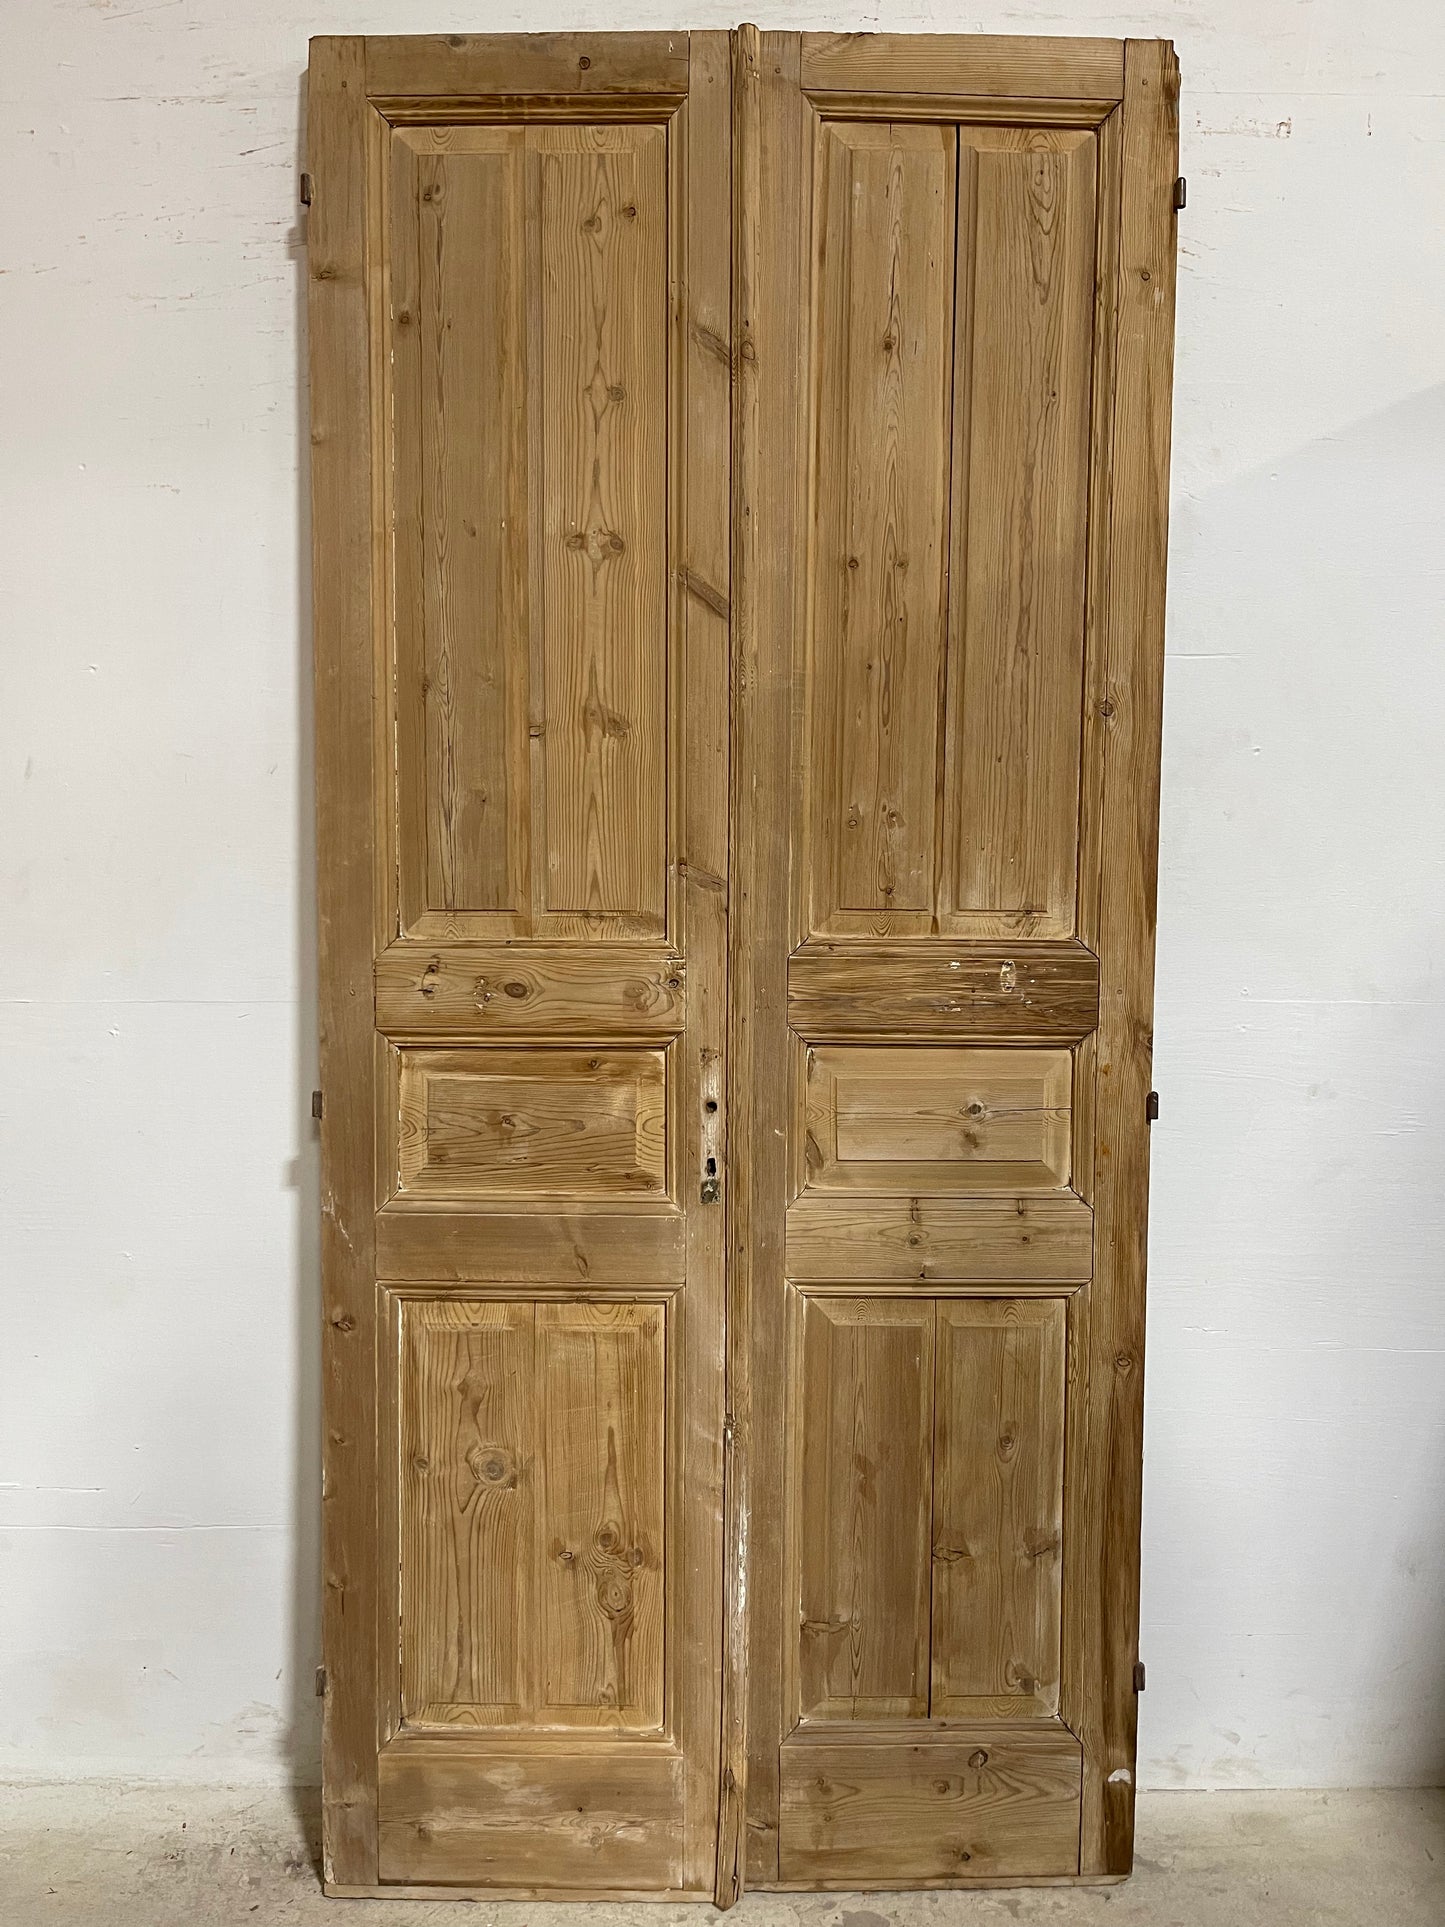 Antique French panel Doors (97.75x44.75) J650